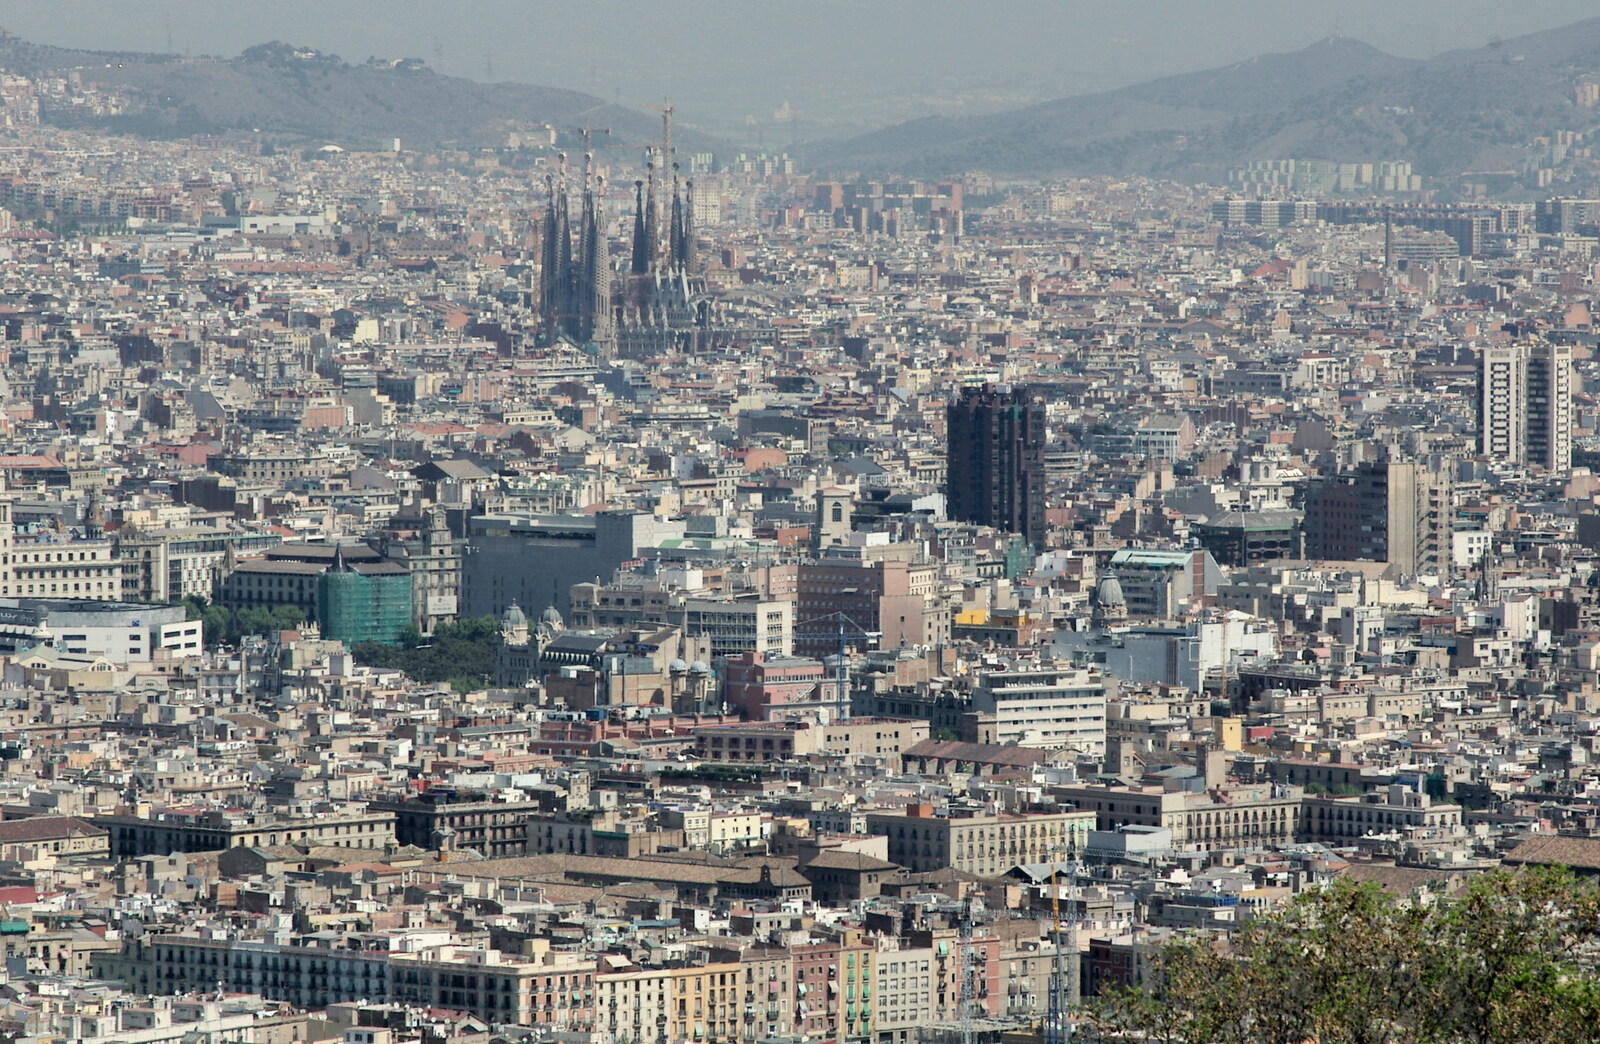 View over Barcelona with La Sagrada Família from Montjuïc and Sant Feliu de Guíxols, Barcelona, Catalunya - 30th April 2005